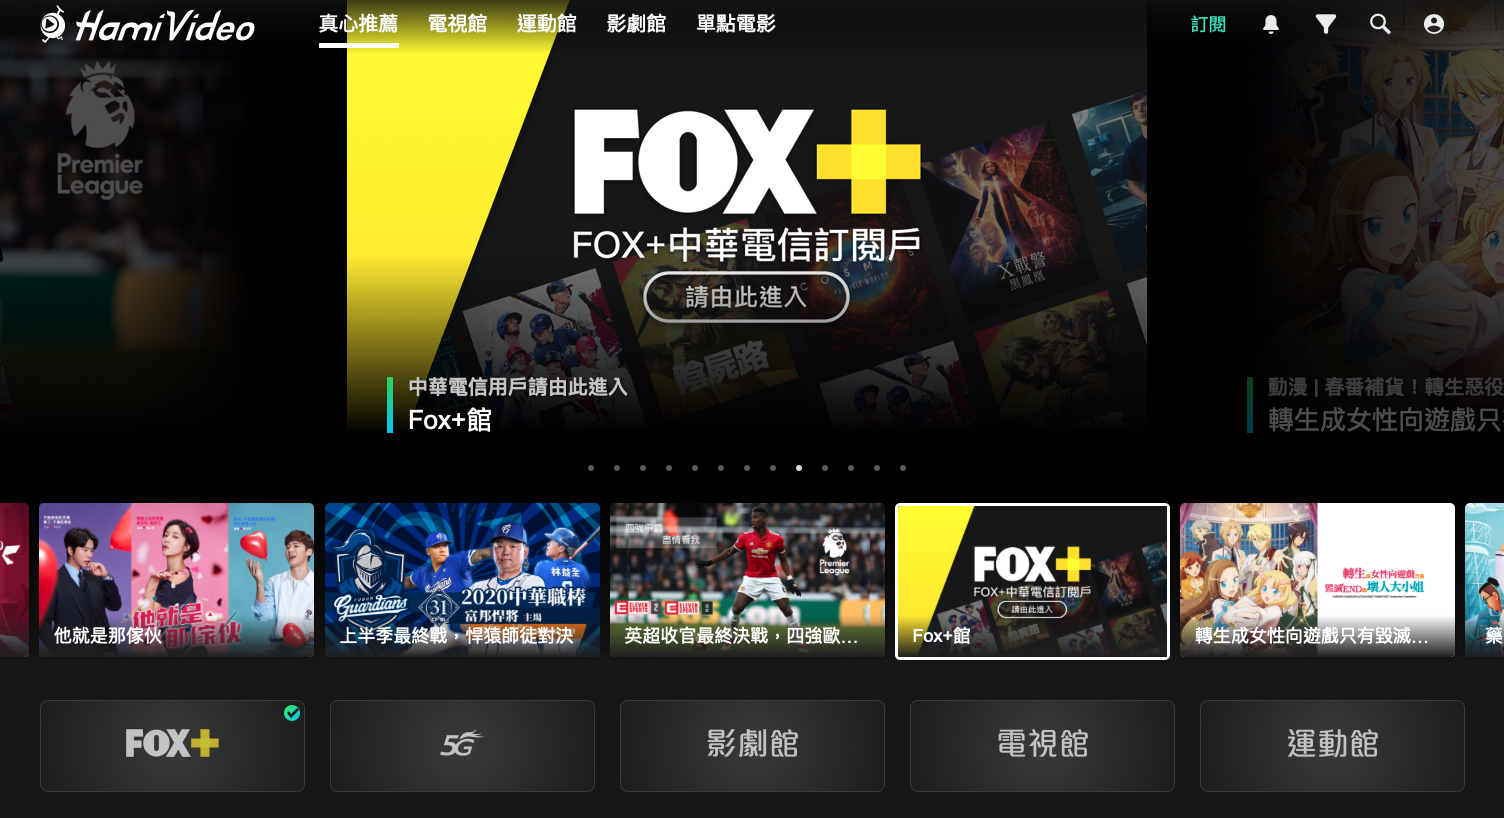 想透過Hami Video訂閱FOX+必須要有中華電信手機門號，同時也要注意別訂閱錯誤，訂到Hami Video自家的運動館